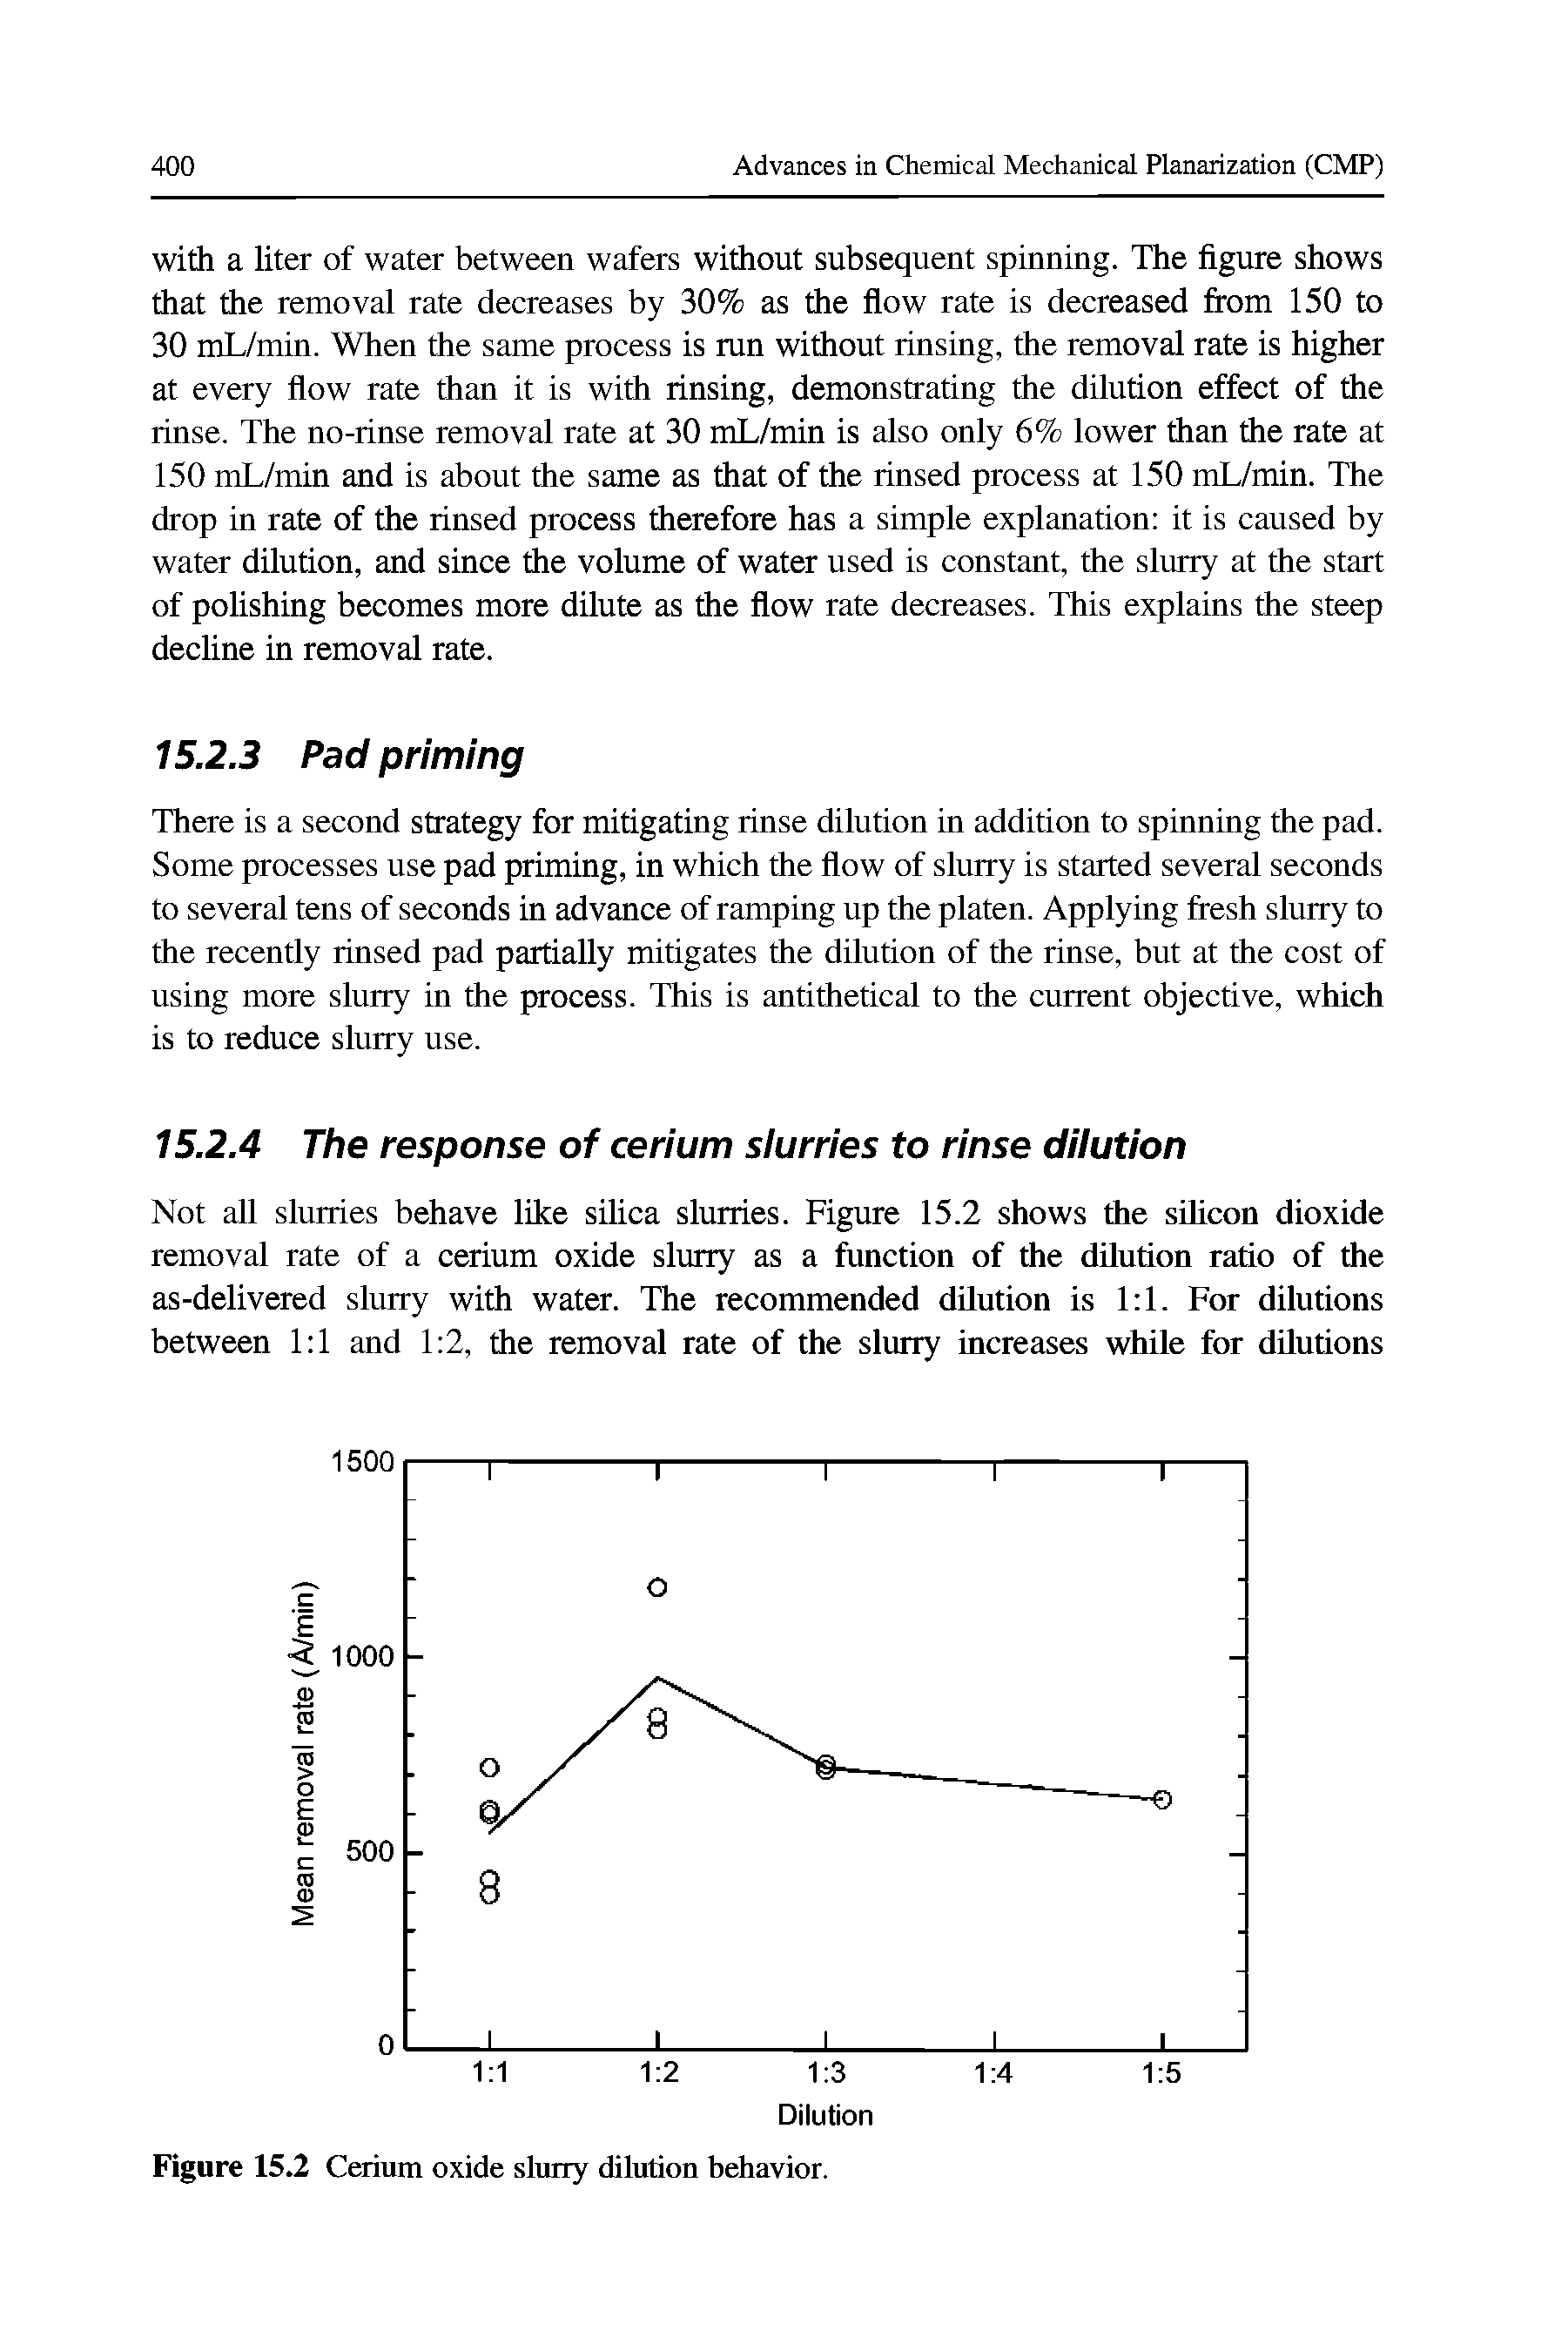 Figure 15.2 Cerium oxide slurry dilution behavior.